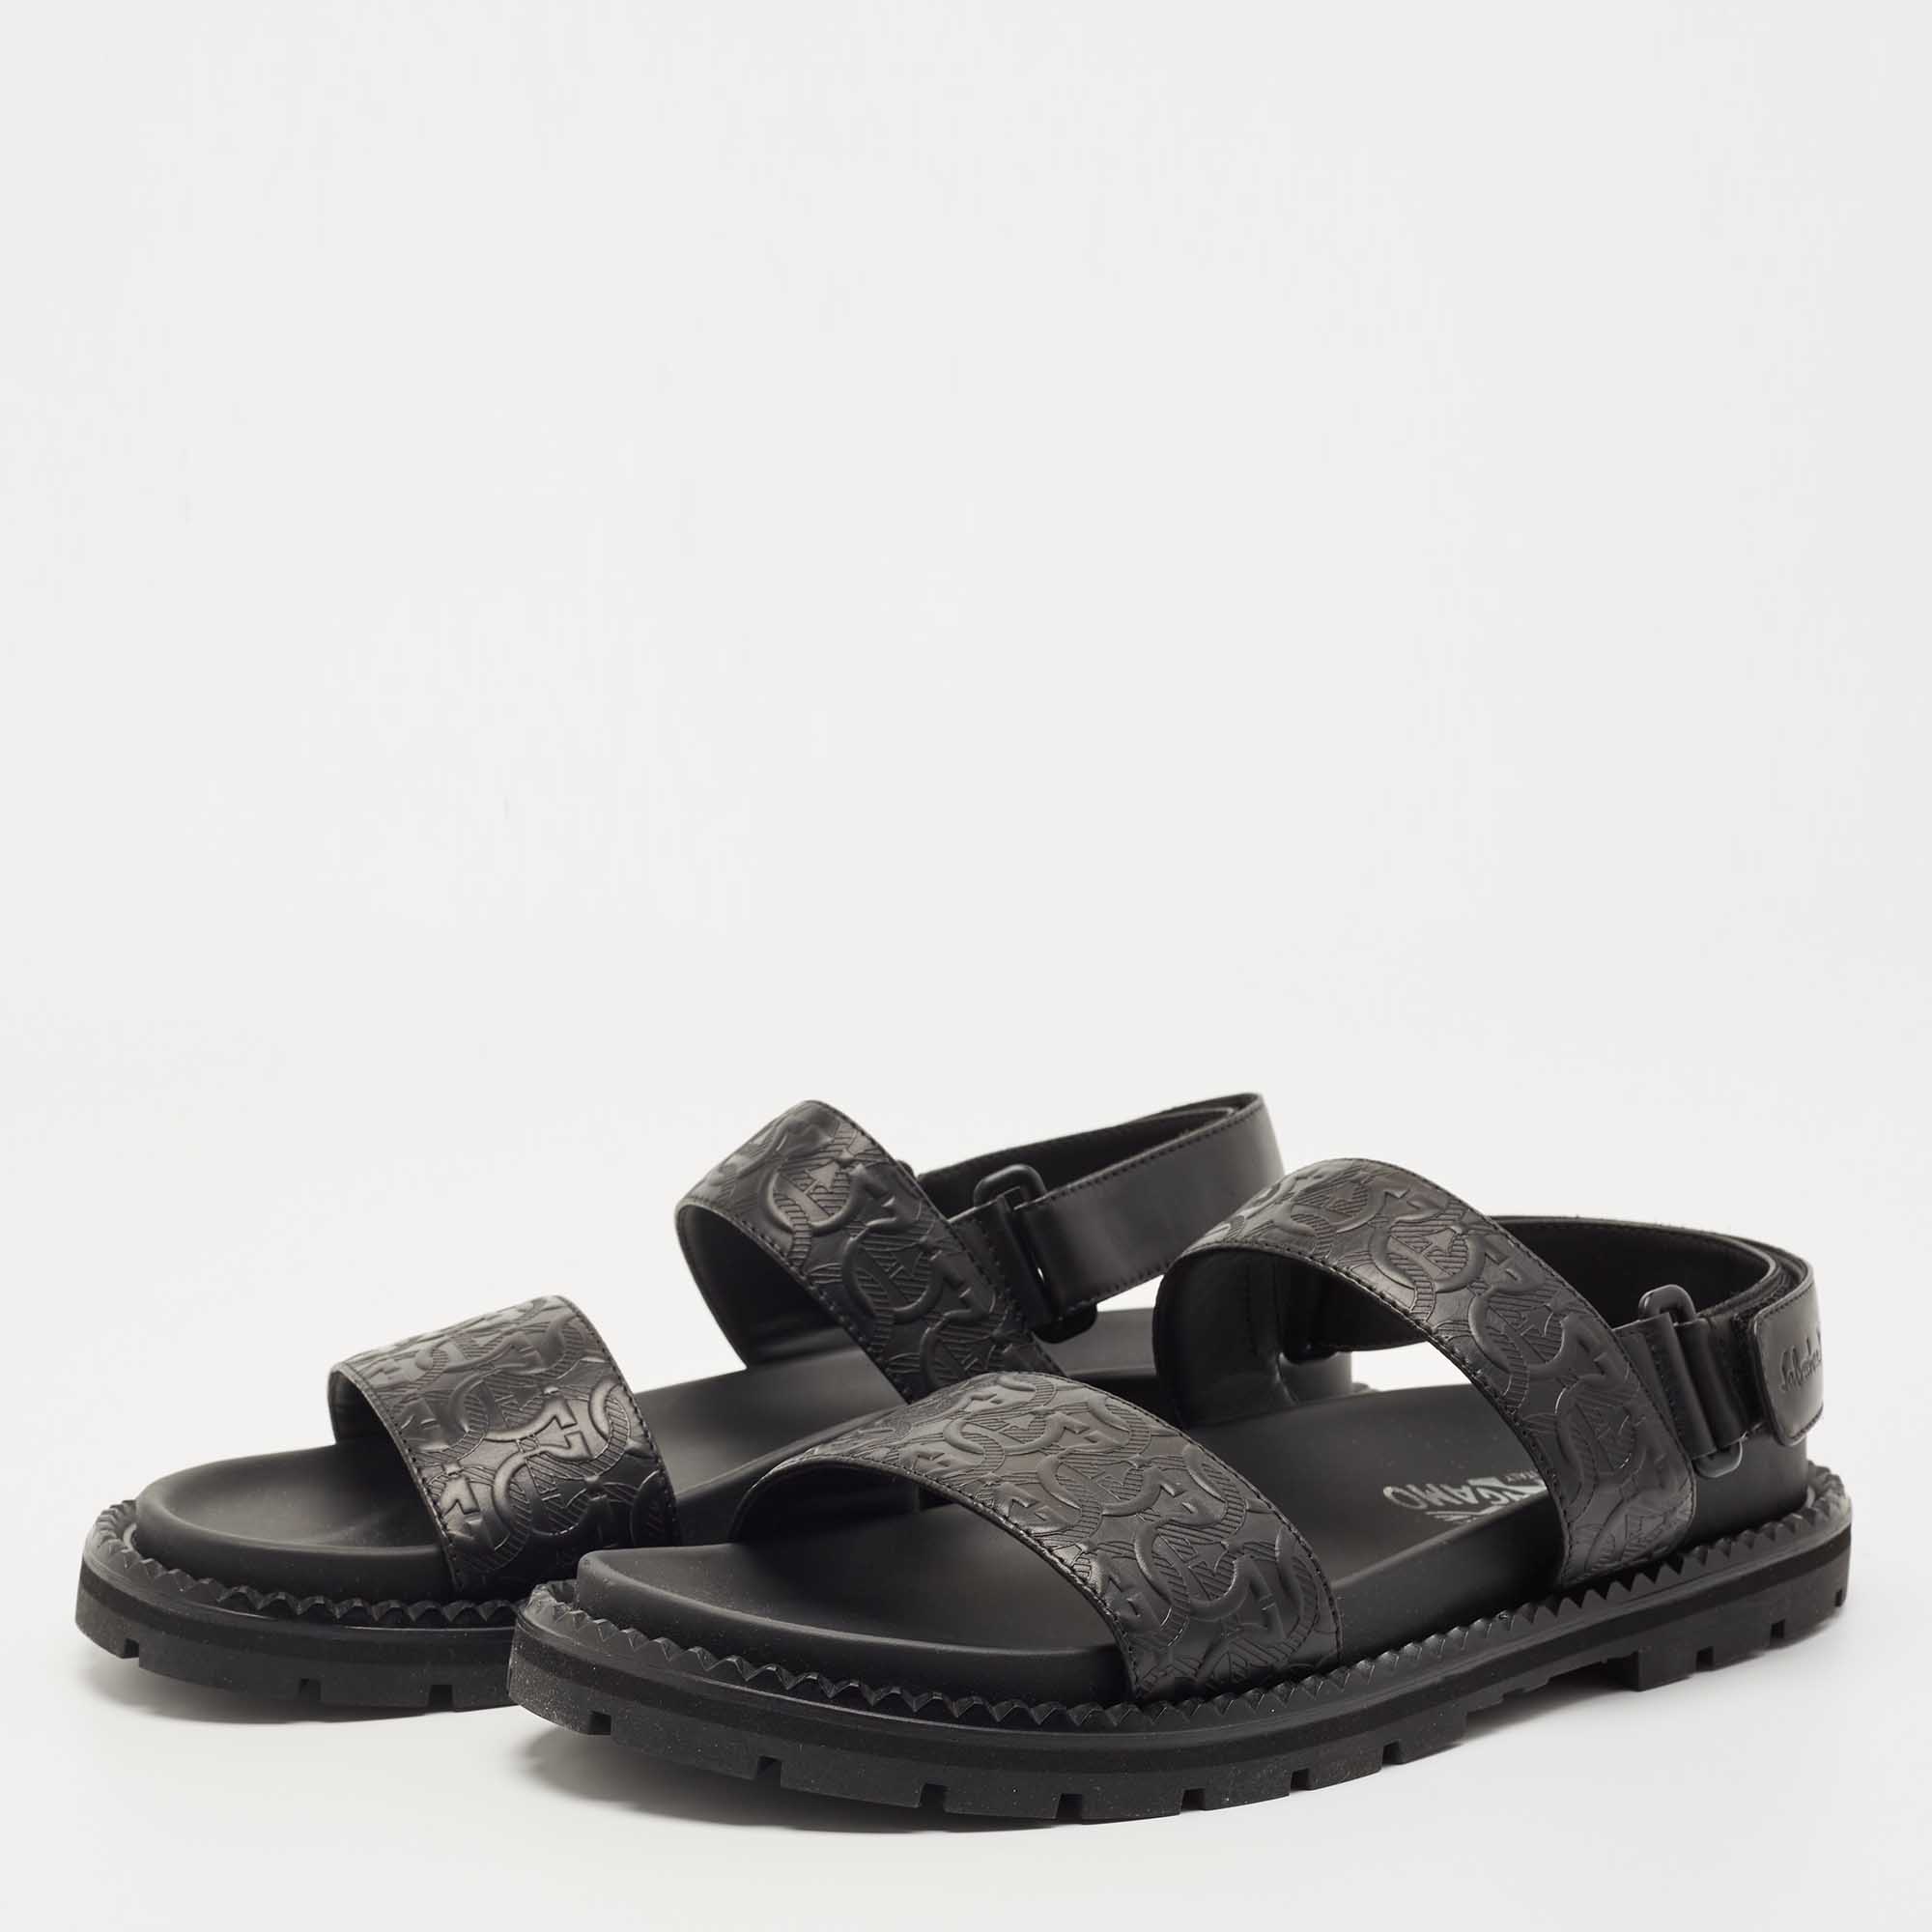 Sandals Salvatore Ferragamo Black size 8 US in Rubber - 39348854